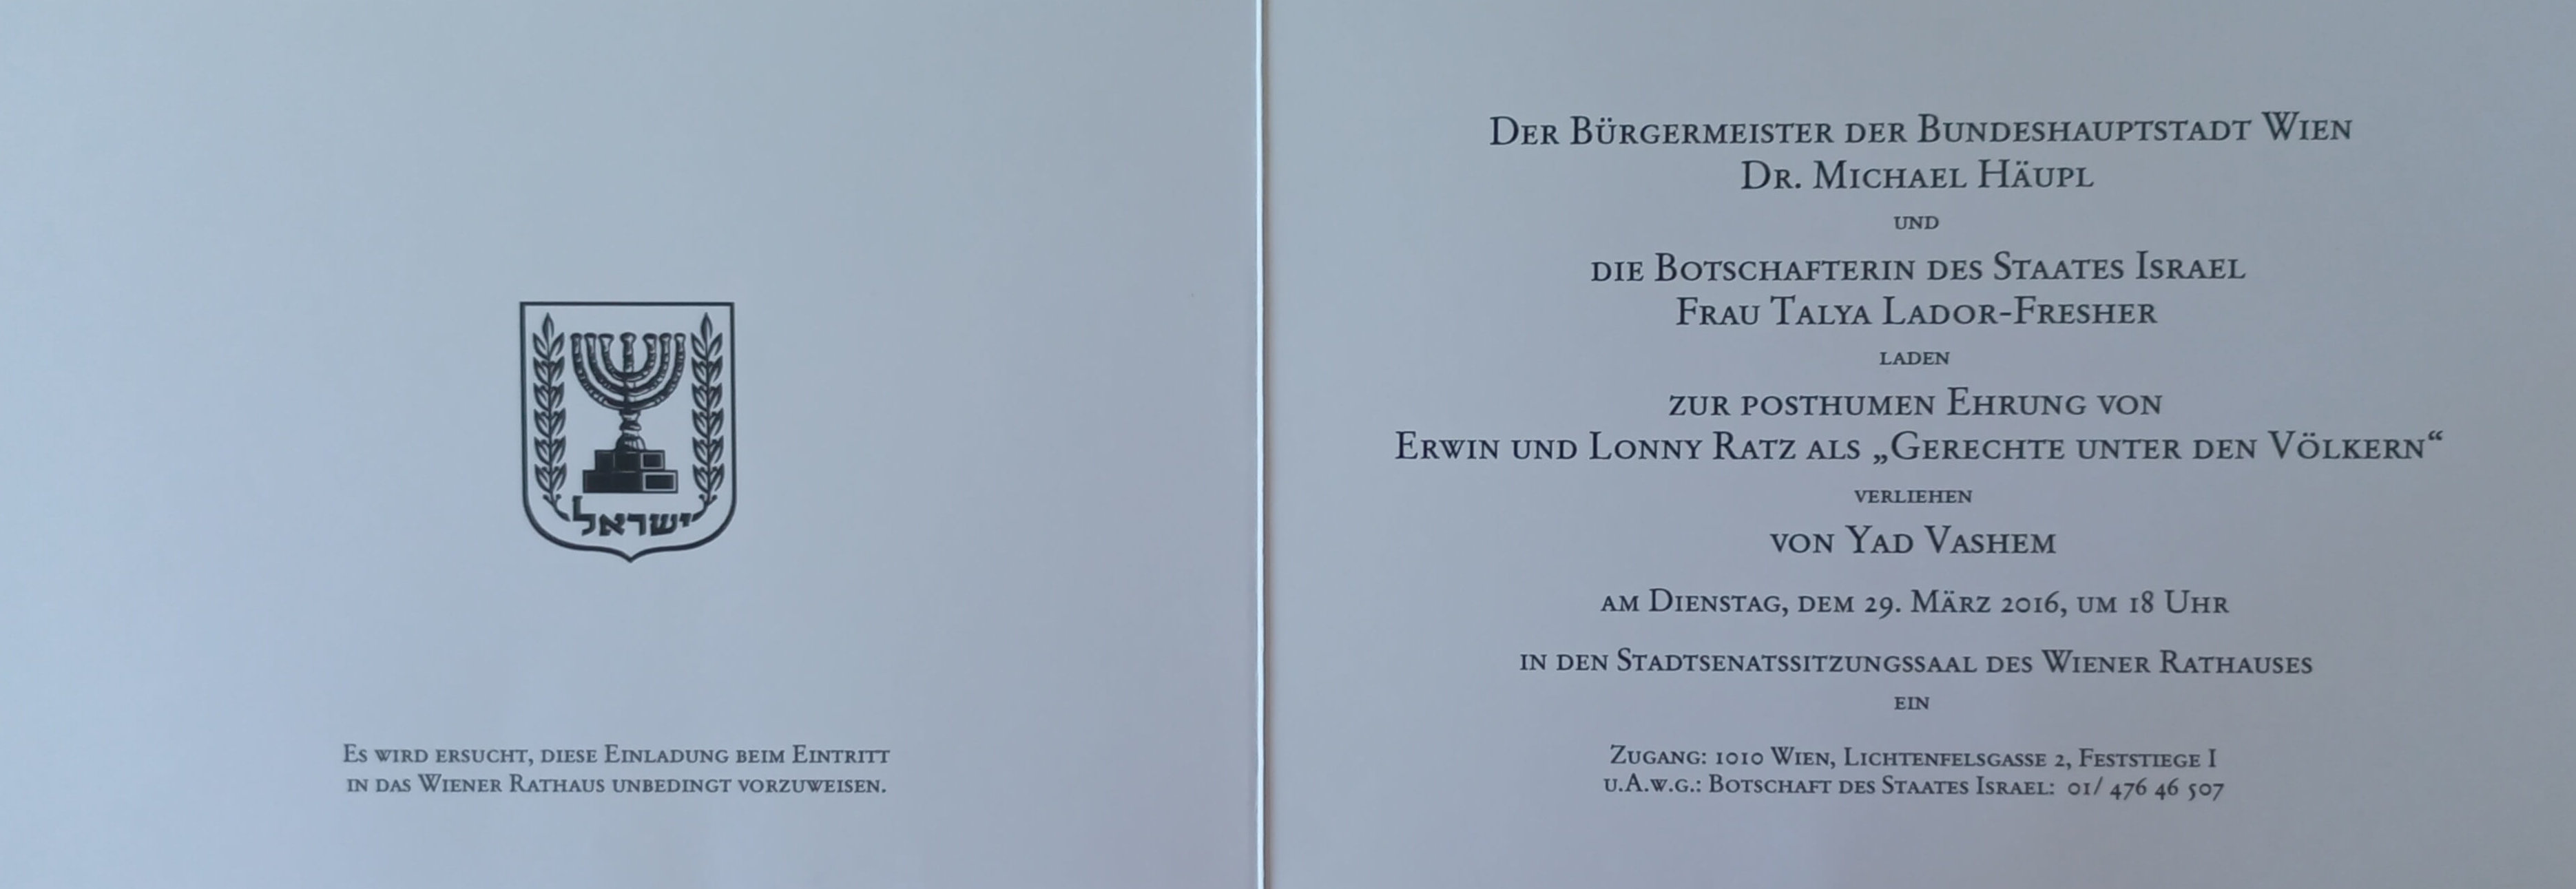 Einladung zur posthumen Ehrung von Erwin und Lonny Ratz als „Gerechte unter den Völkern“ im Wiener Rathaus, März 2016 